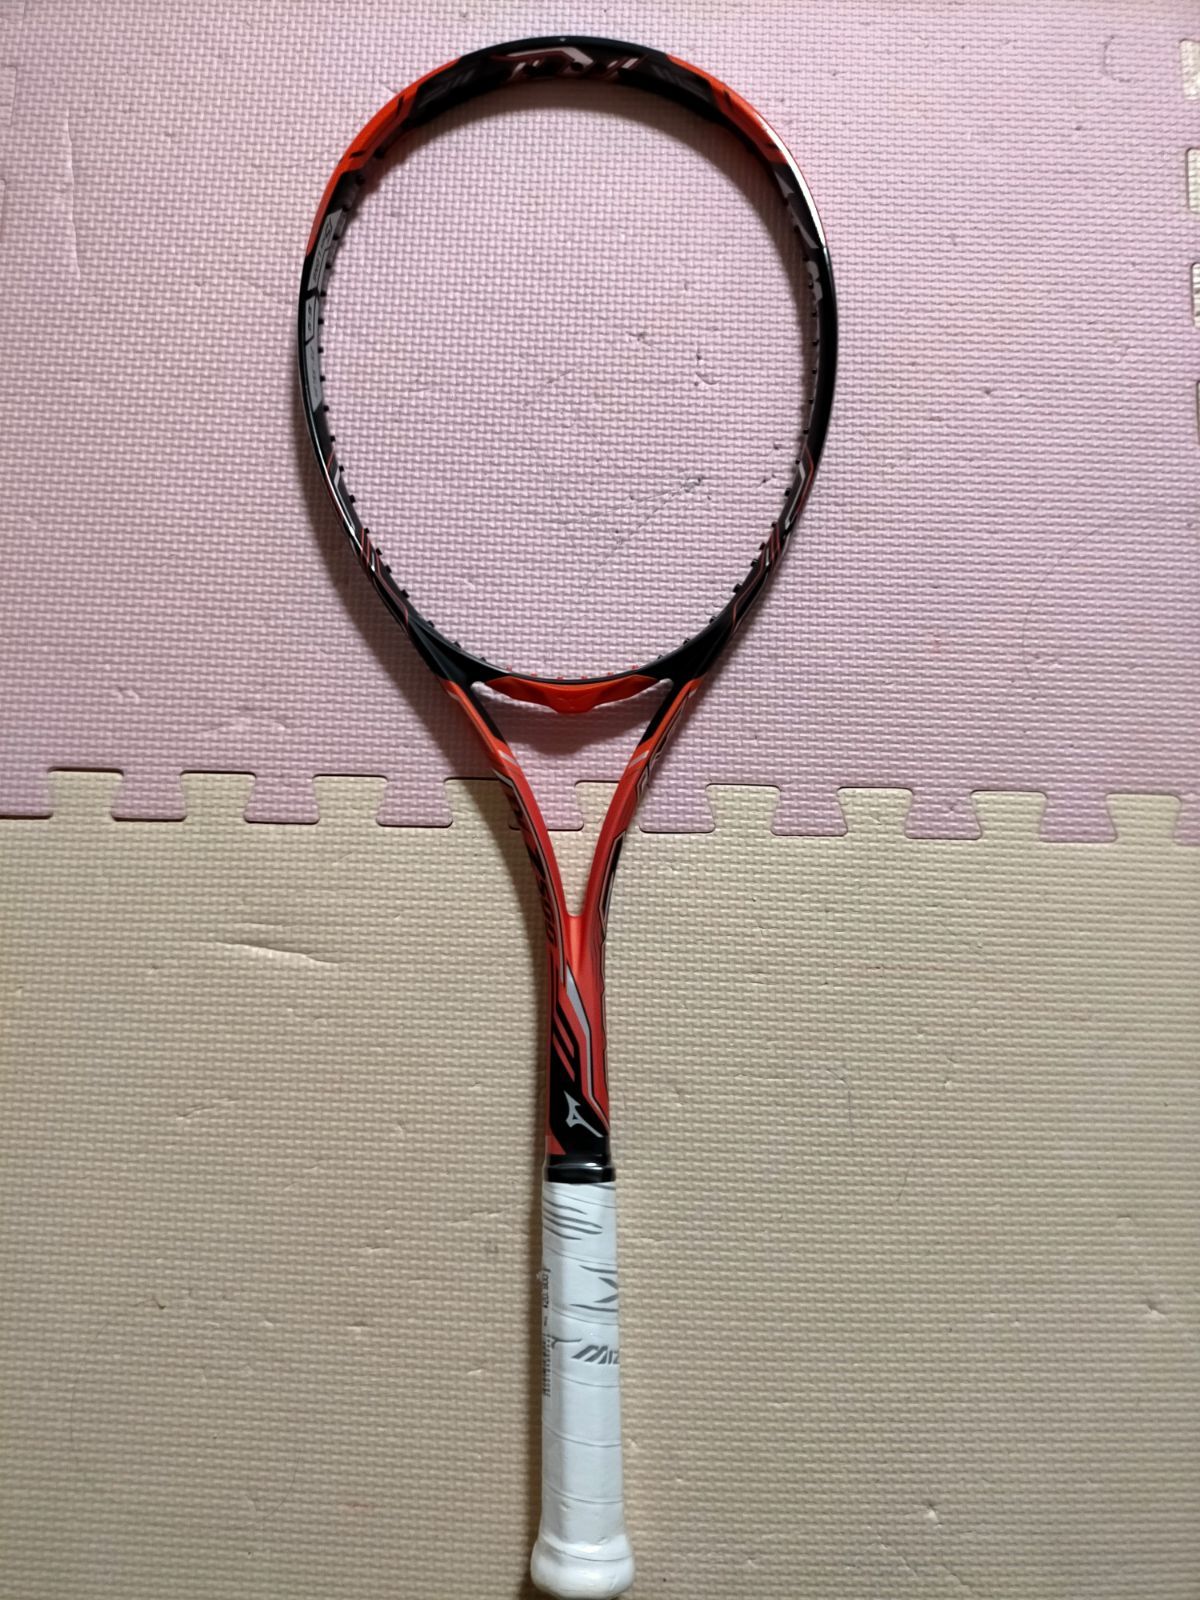 安い公式ソフトテニス ラケットMIZUNO DI Z-500ソフトテニス ラケット(軟式用)